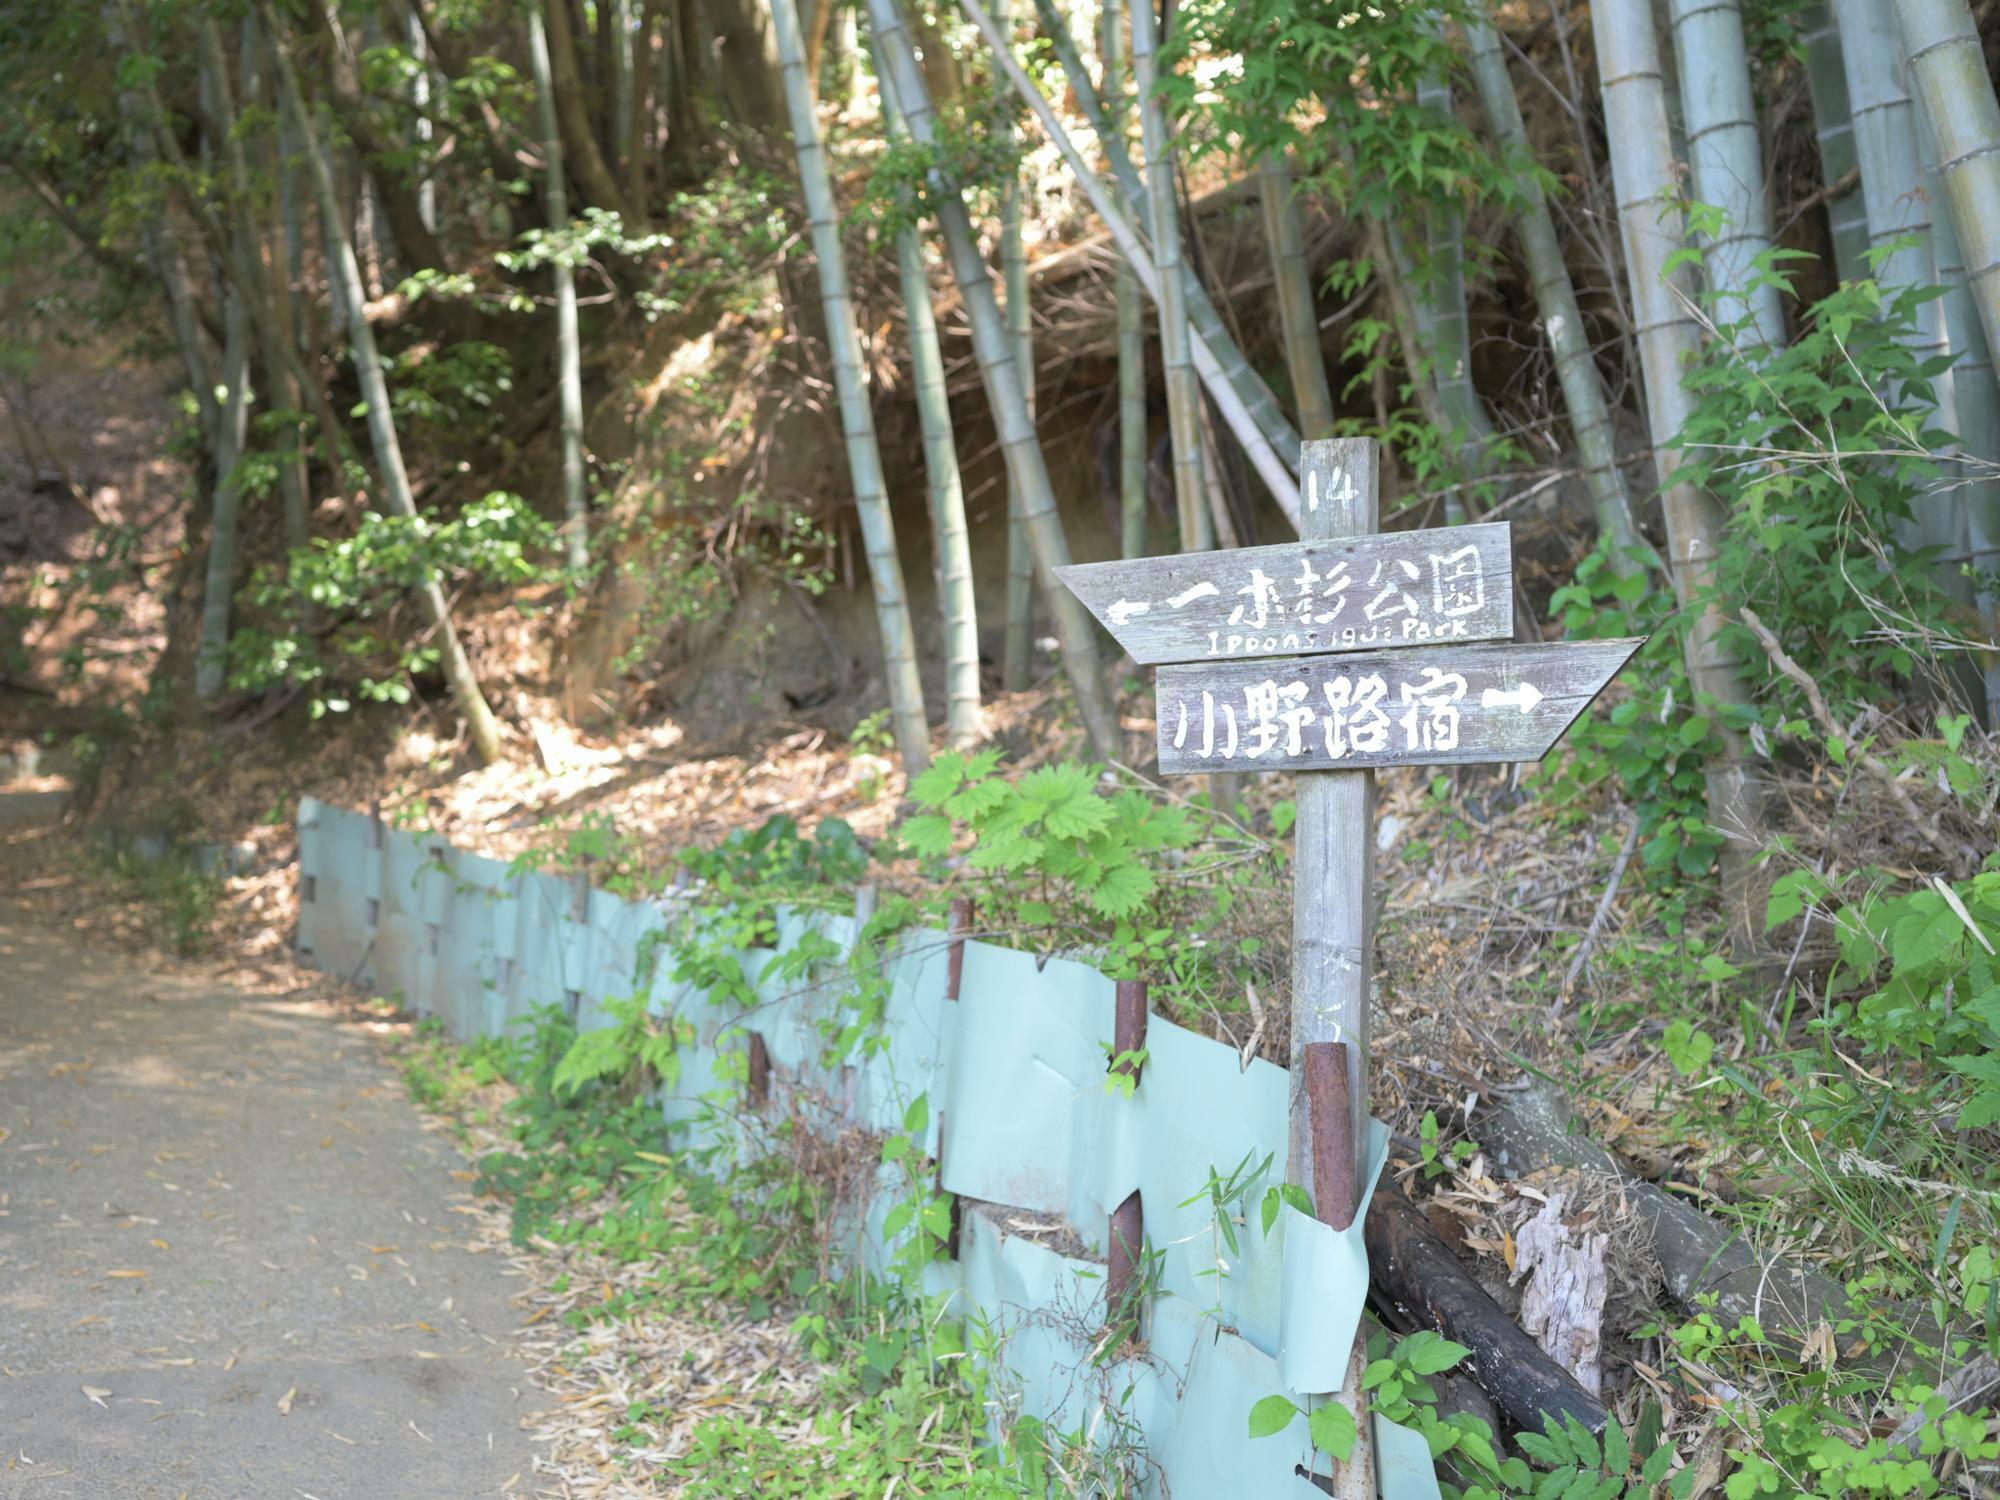 多摩方面にある一本杉公園と小野路宿を示す14番標識